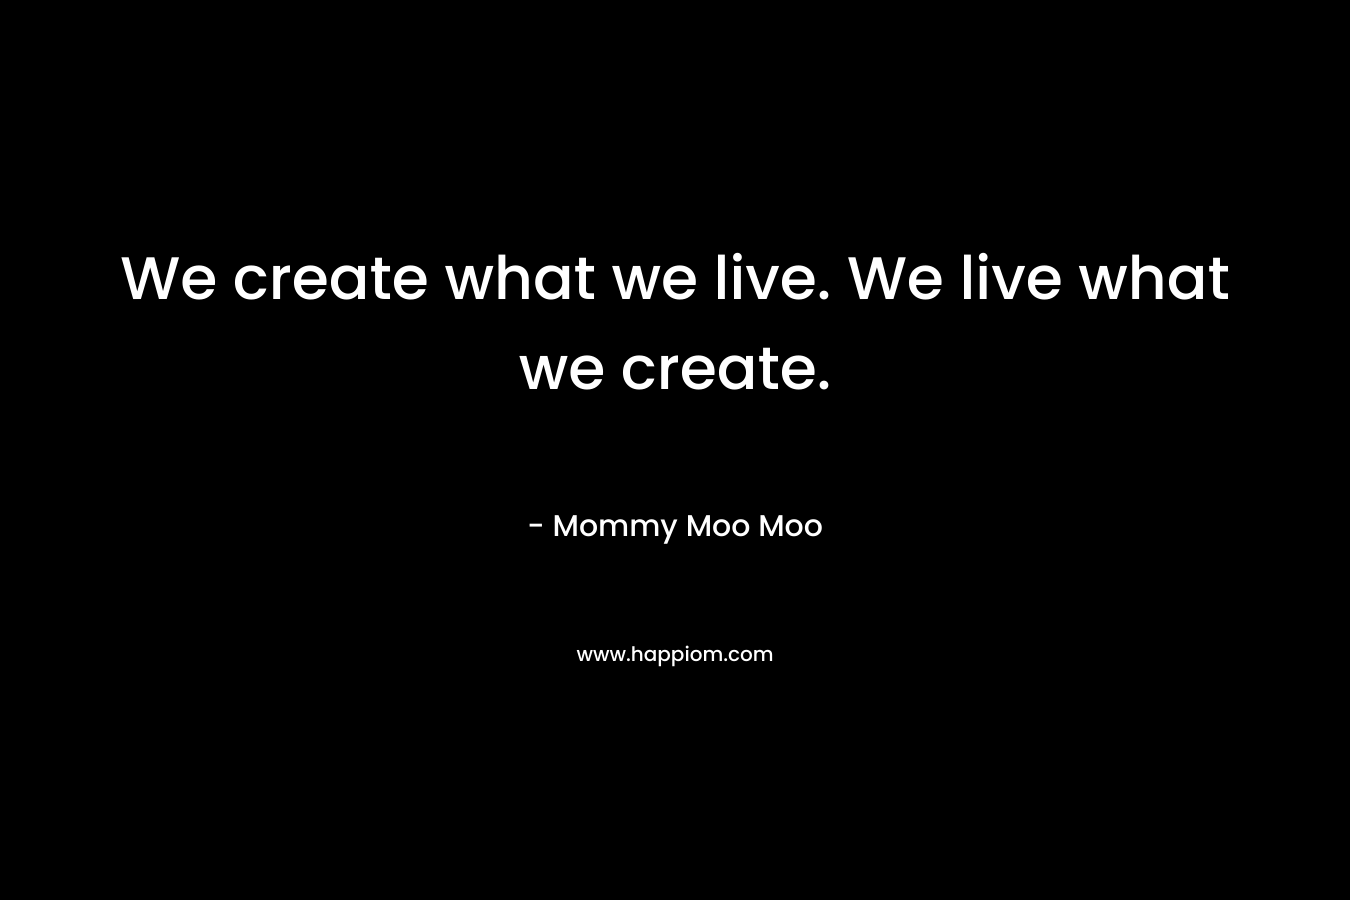 We create what we live. We live what we create. – Mommy Moo Moo